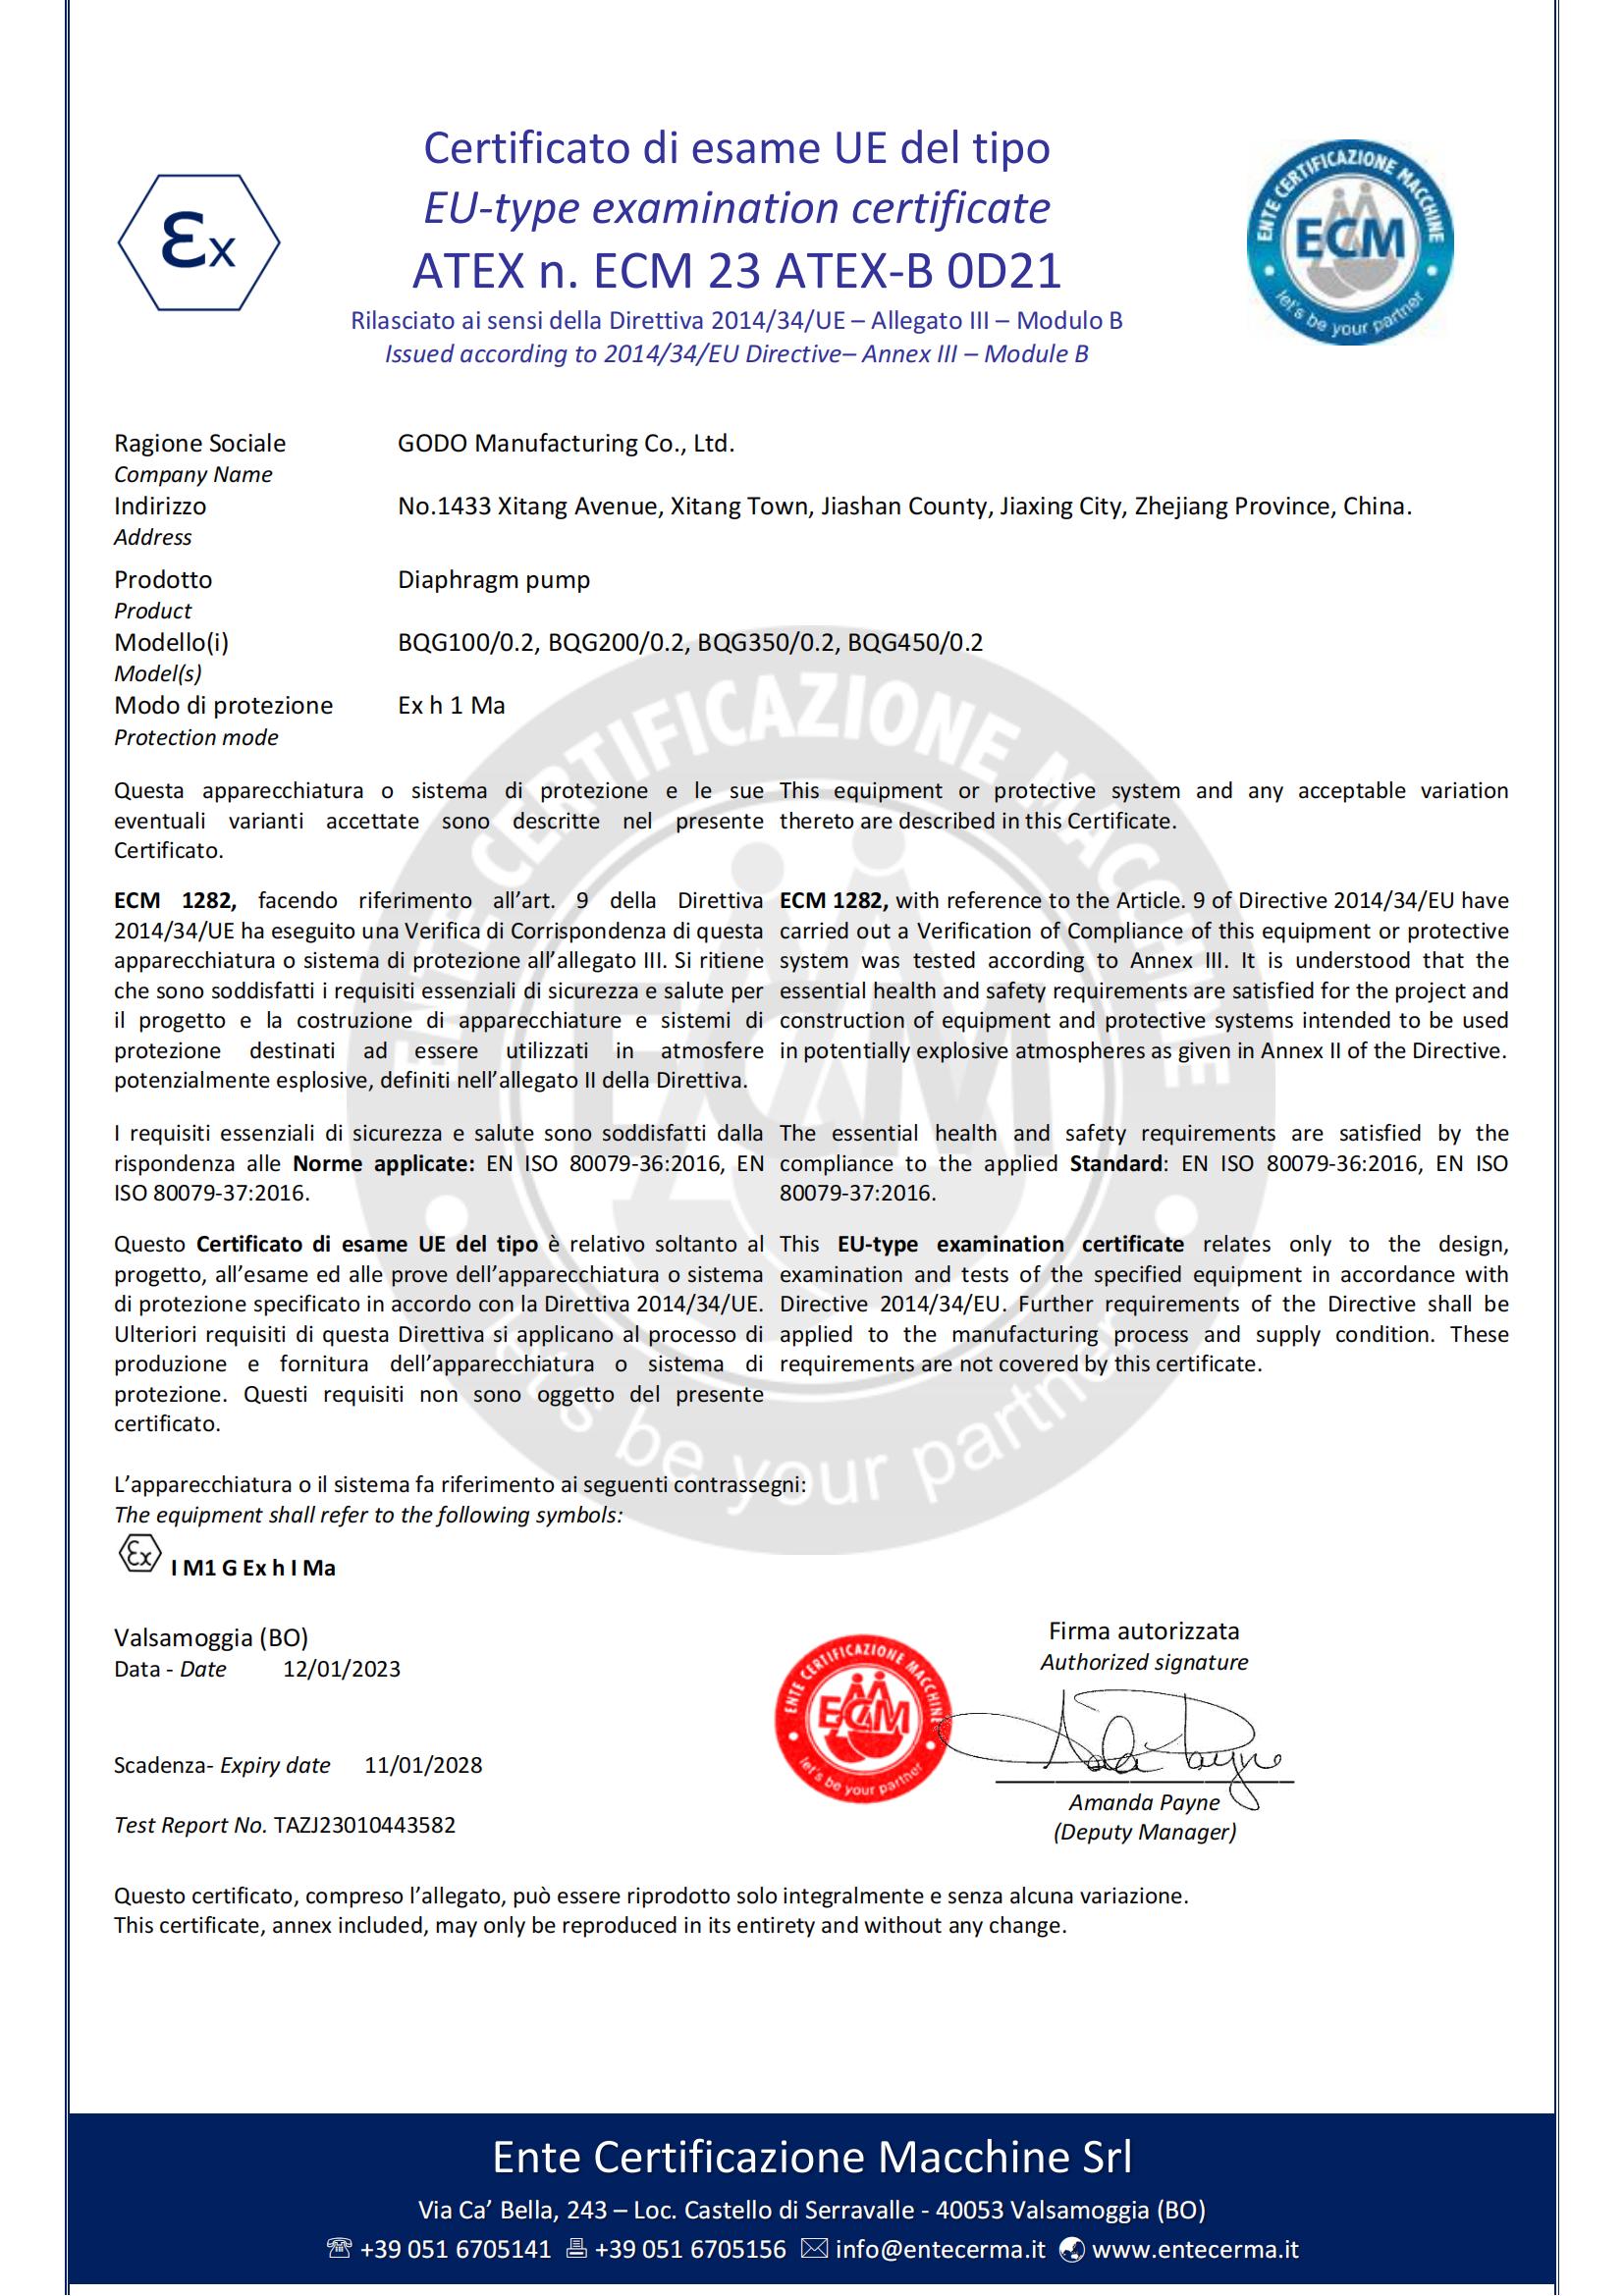 隔膜泵认证证书